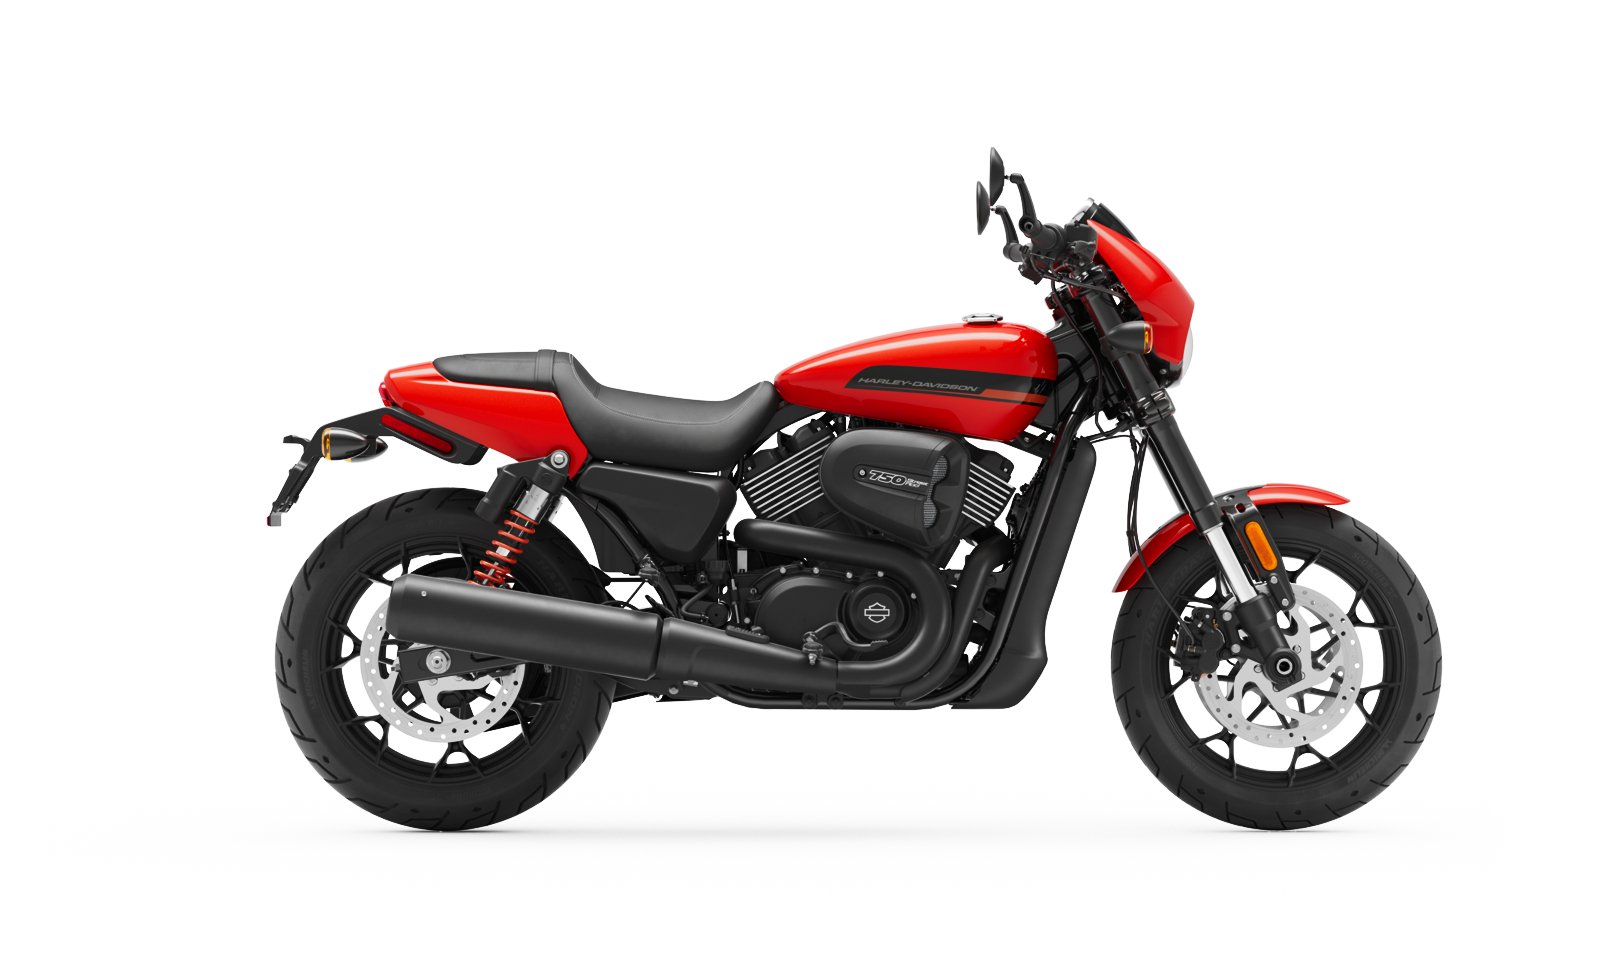 2020 Street Rod Motorcycle Harley Davidson Europe